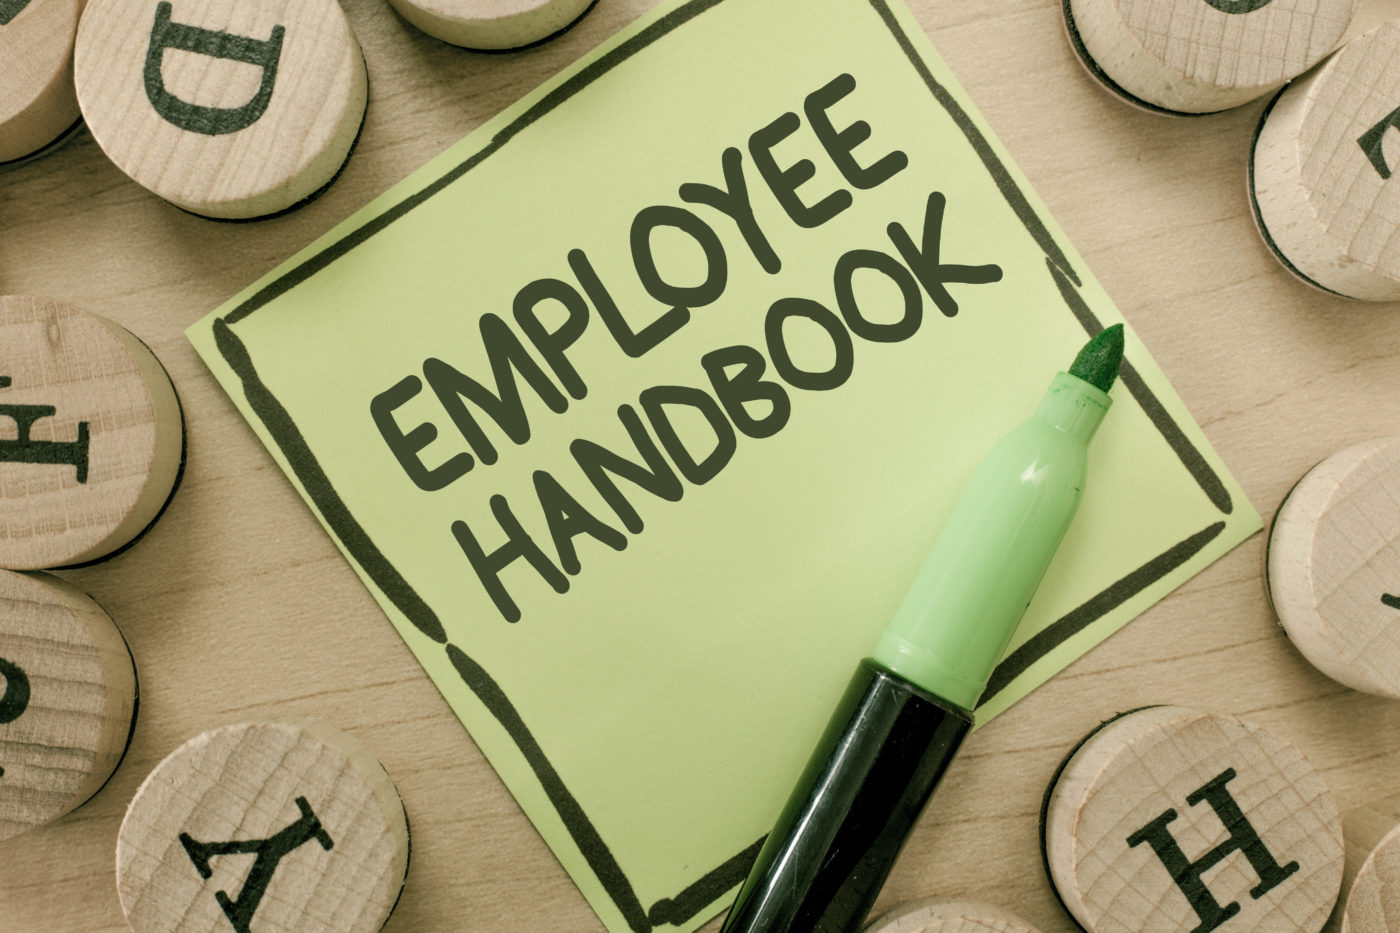 Updating the Employee Handbook